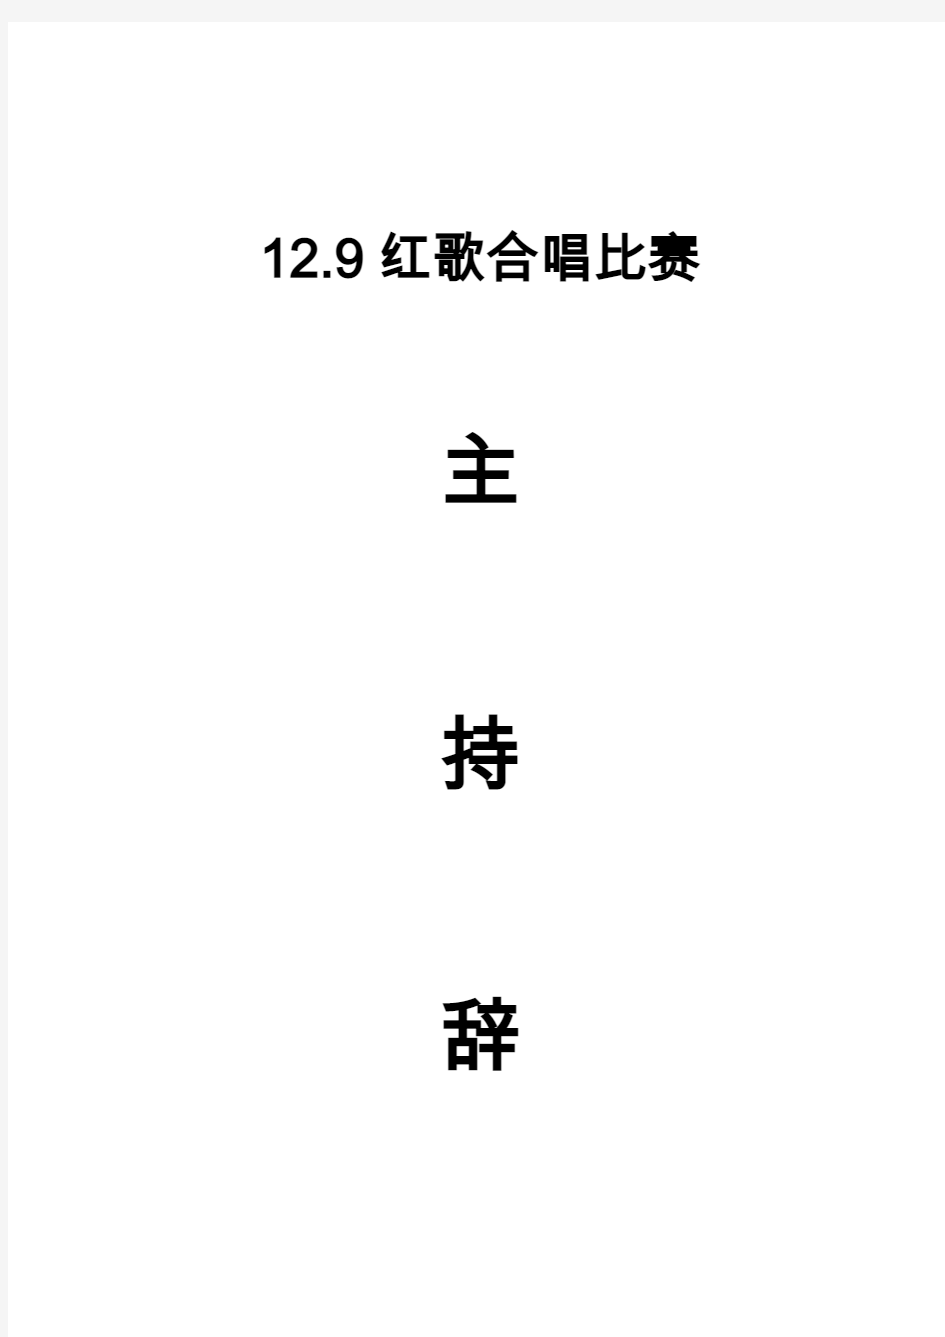 兴仁县第六中学2014年12.9合唱比赛主持辞